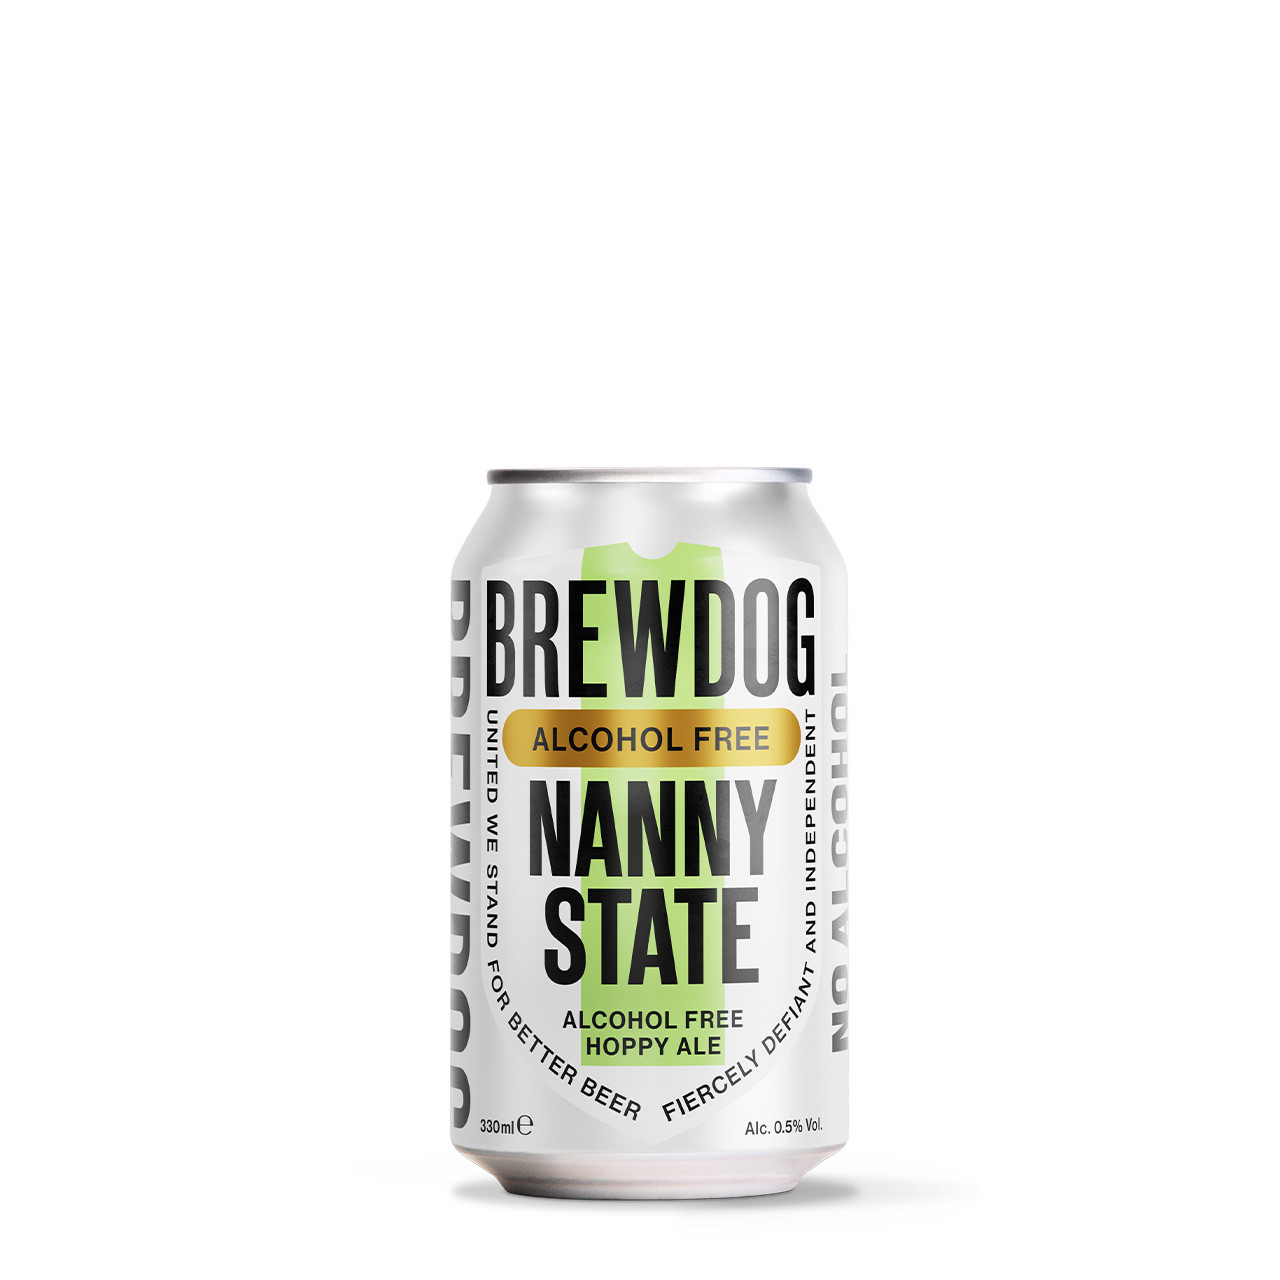 BrewDog Nanny State blik 33cl. Is het alcoholarme hop bier BrewDog met 0.5% alcohol